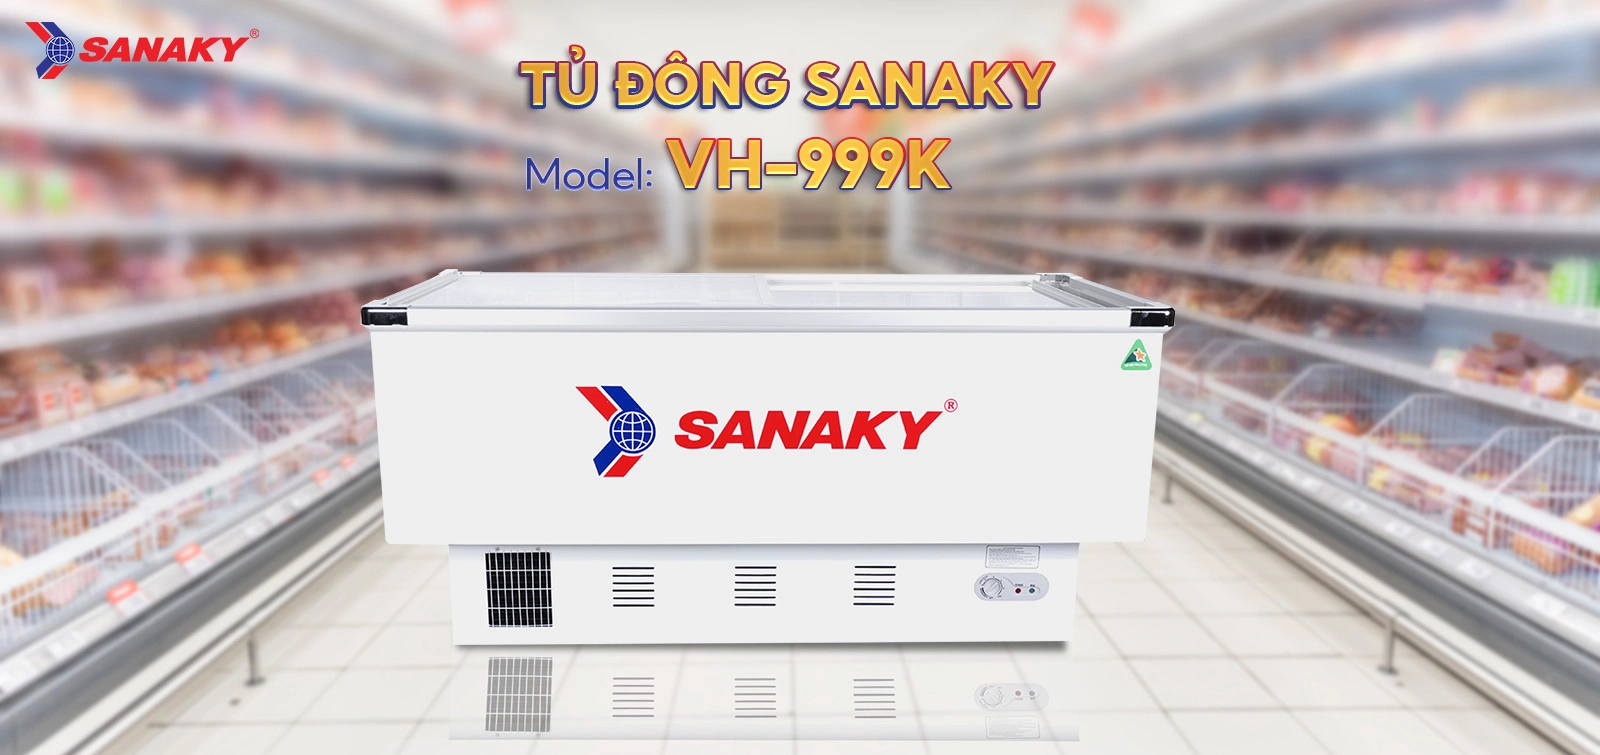 Tủ Đông Sanaky VH-999K